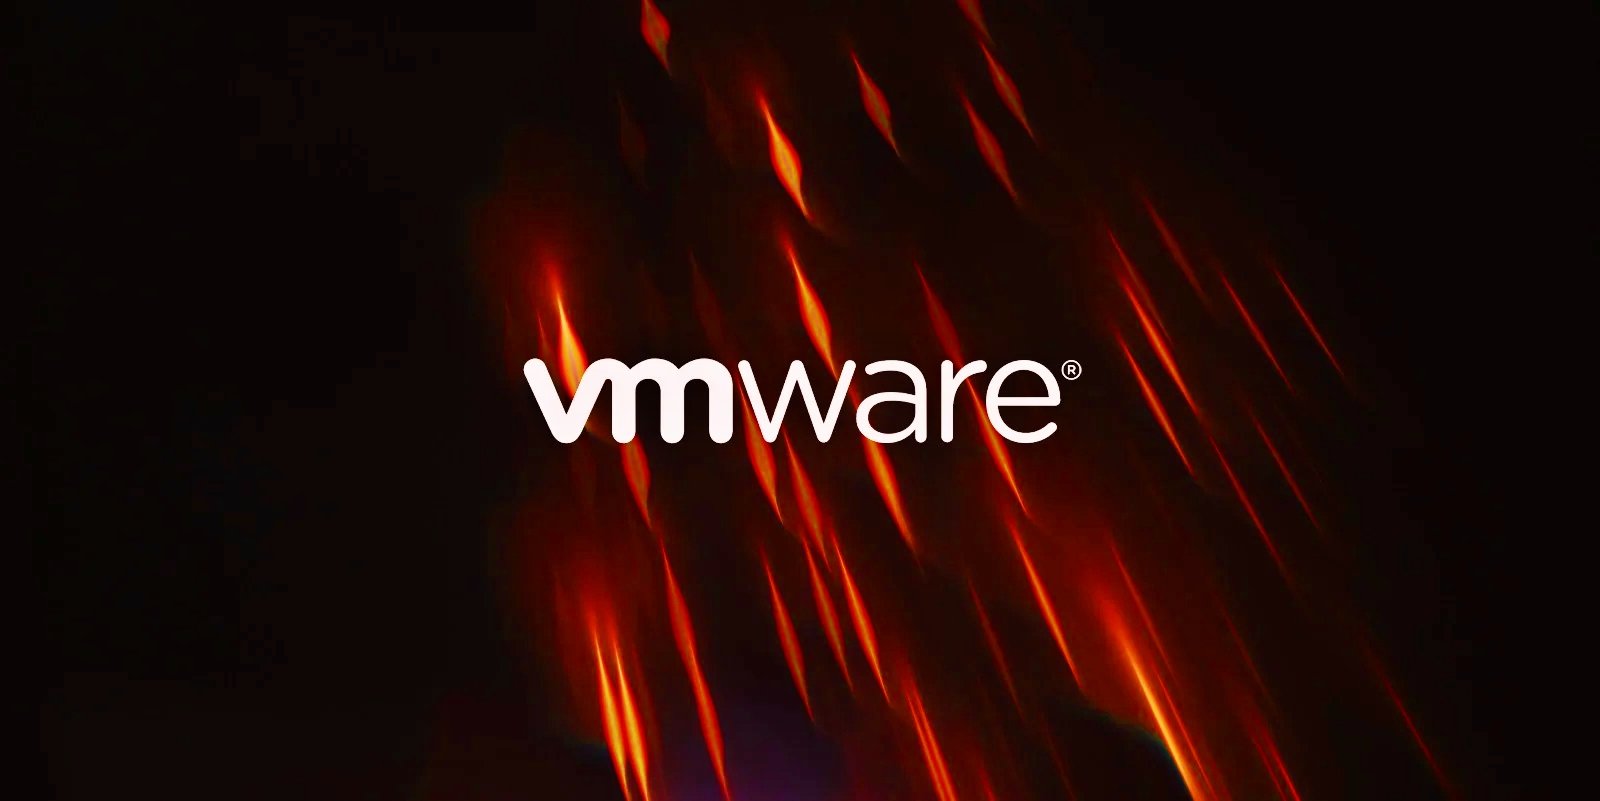 Logo VMware dalam nyala api